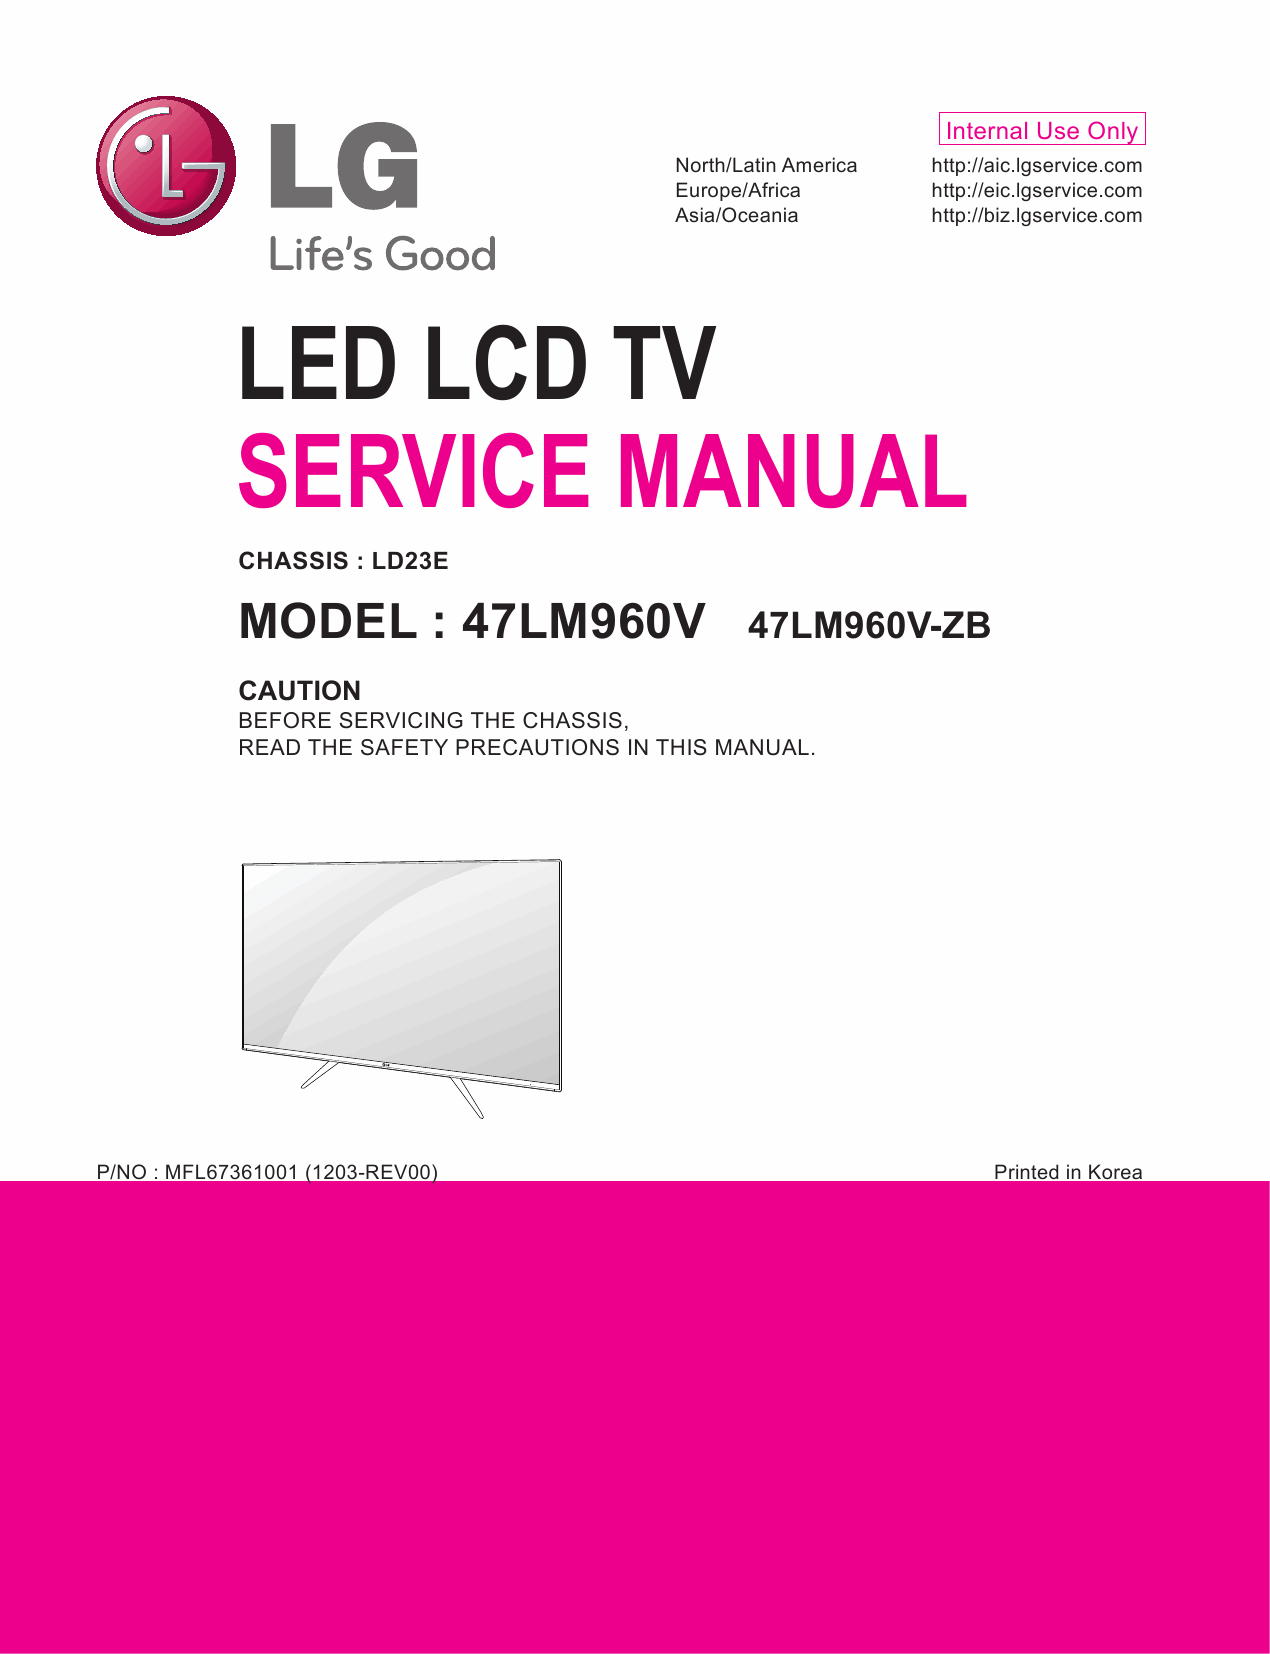 LG_LCD_TV_47LM960V_Service_Manual_2012_Qmanual.com-1